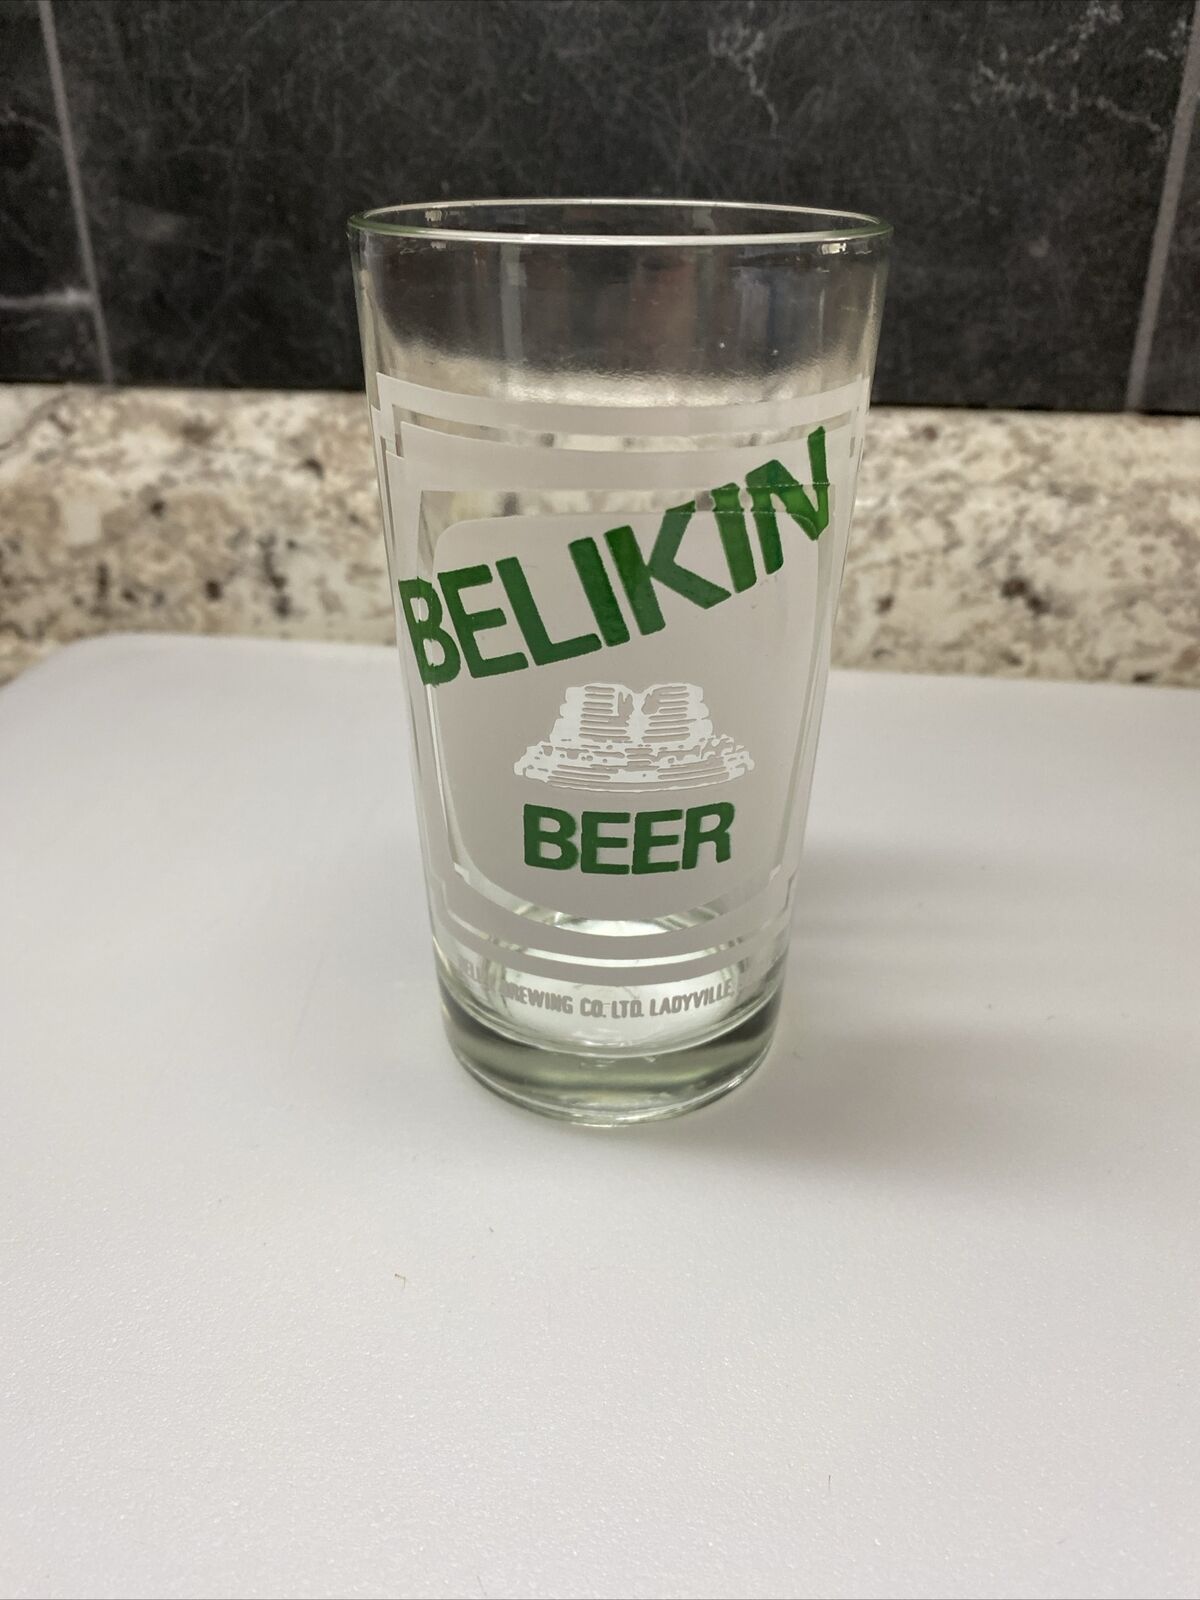 Vintage Belikin Beer Glasses-Clear Glass-Holds 9 oz-5” High-Made In Belize